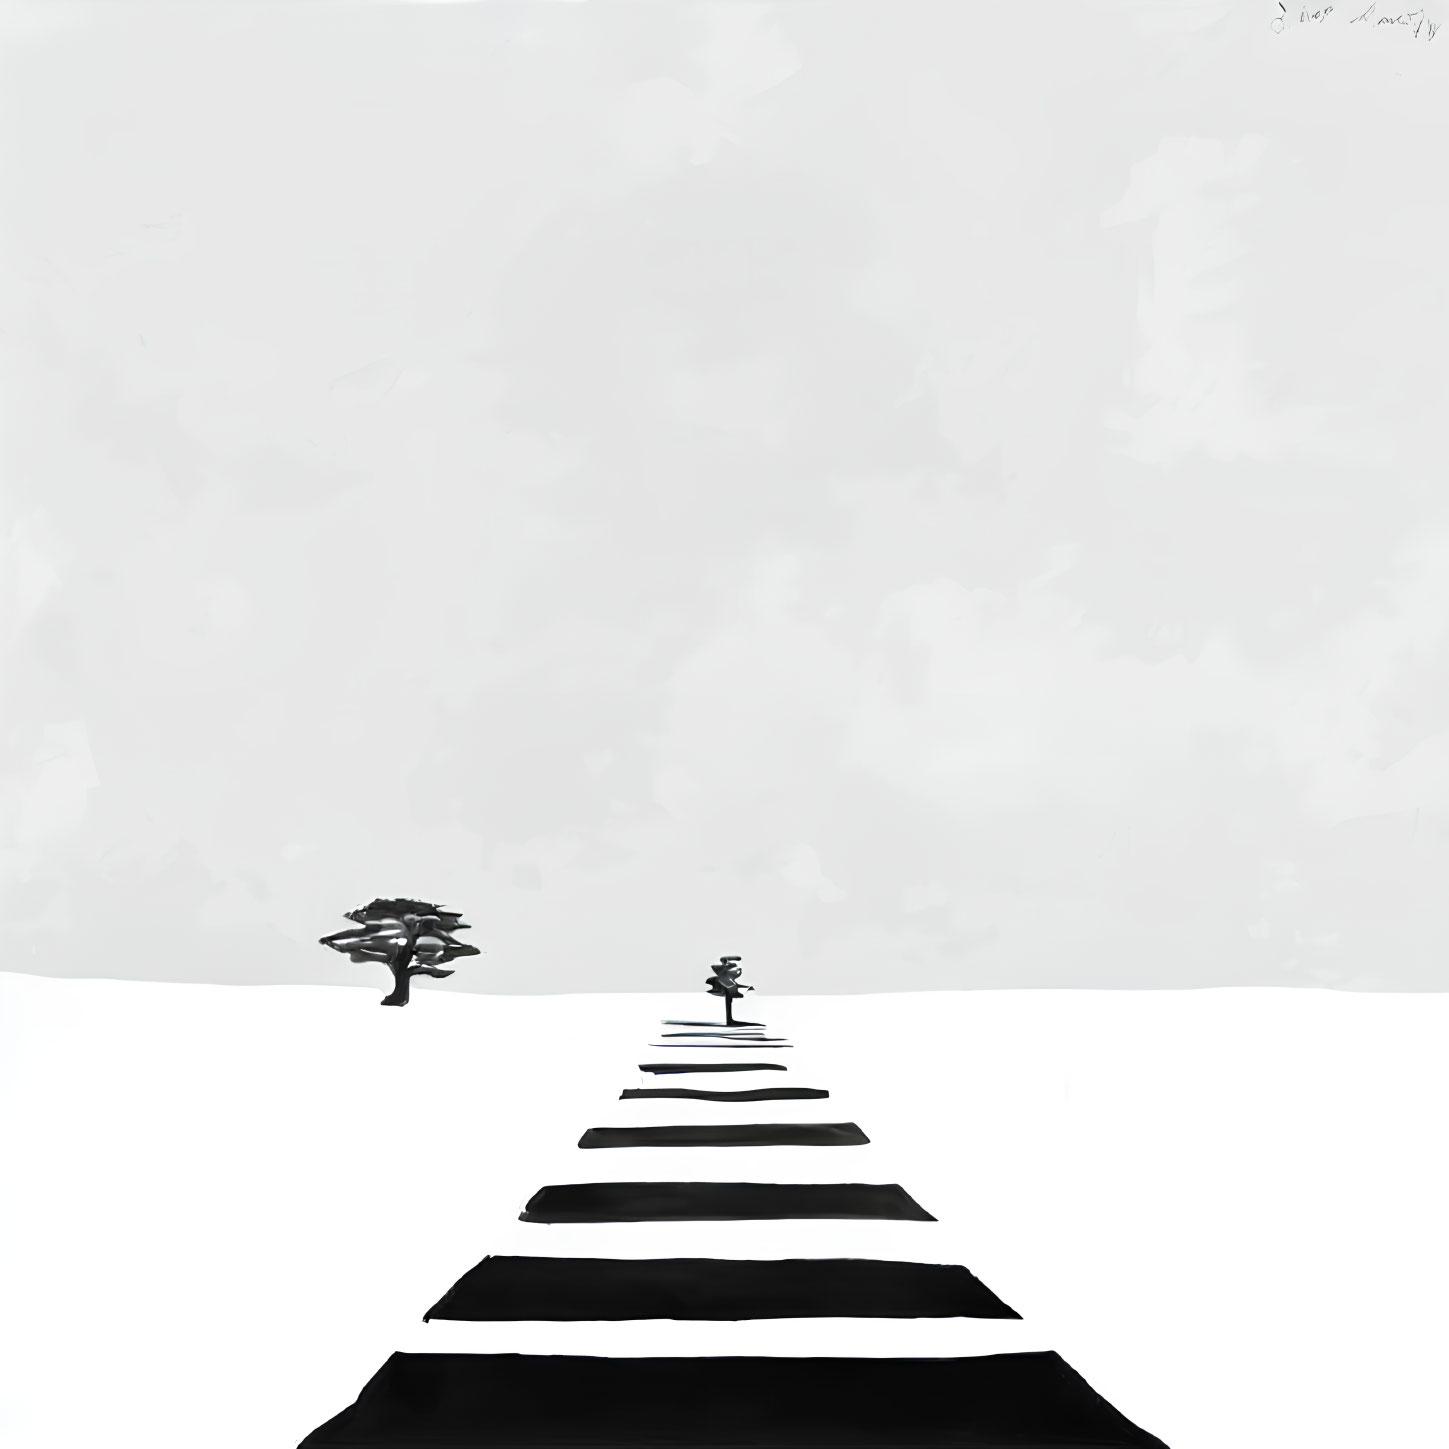 Monochrome minimalist artwork of tree and figure on shadowed path